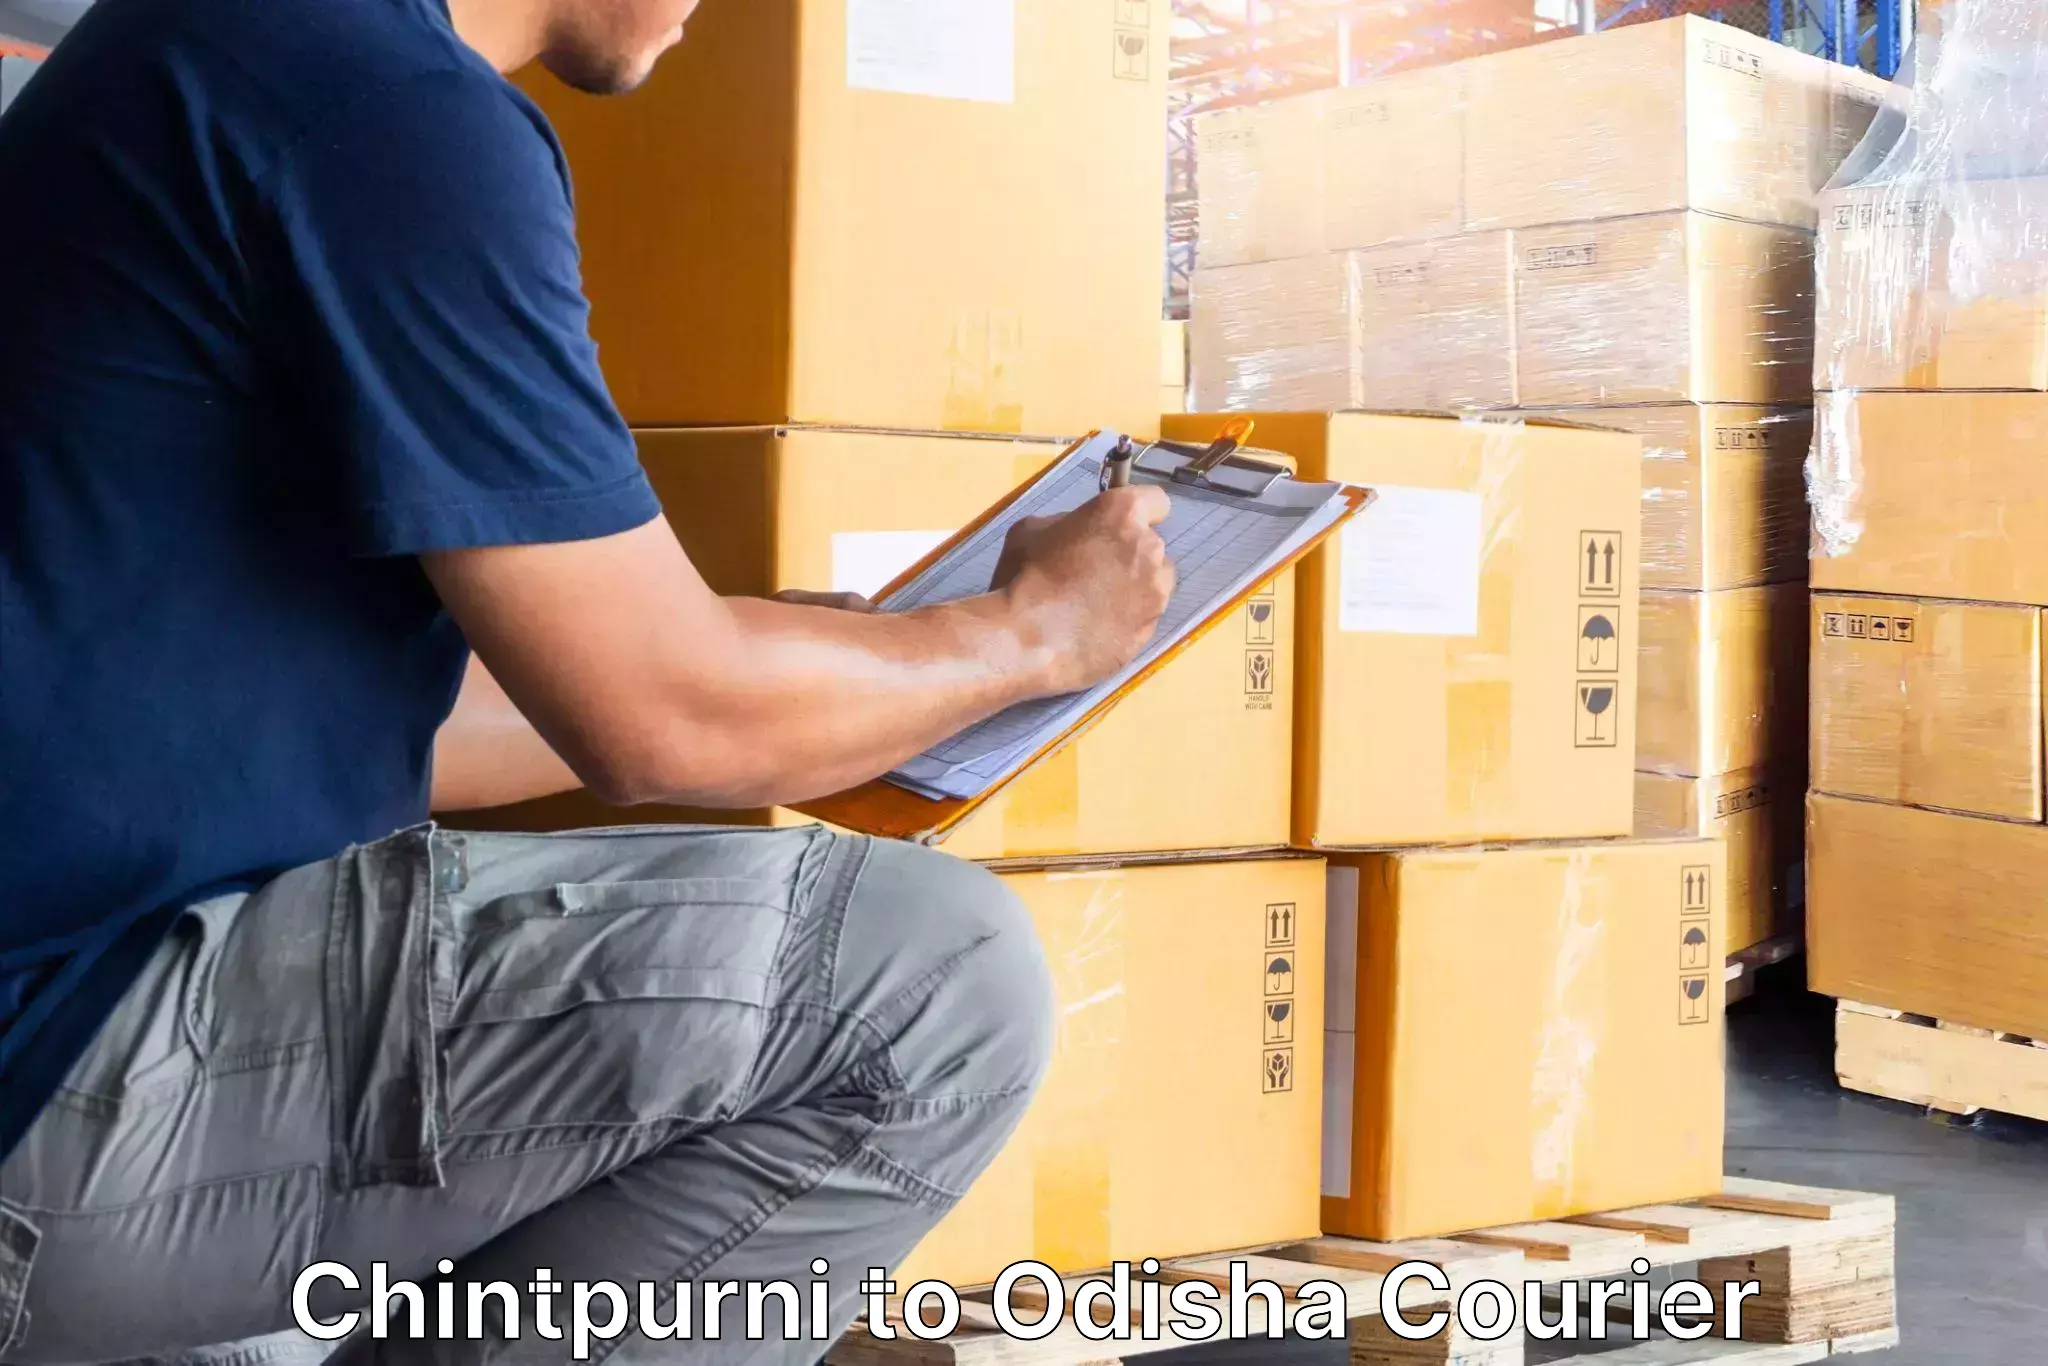 Furniture moving service in Chintpurni to Angul